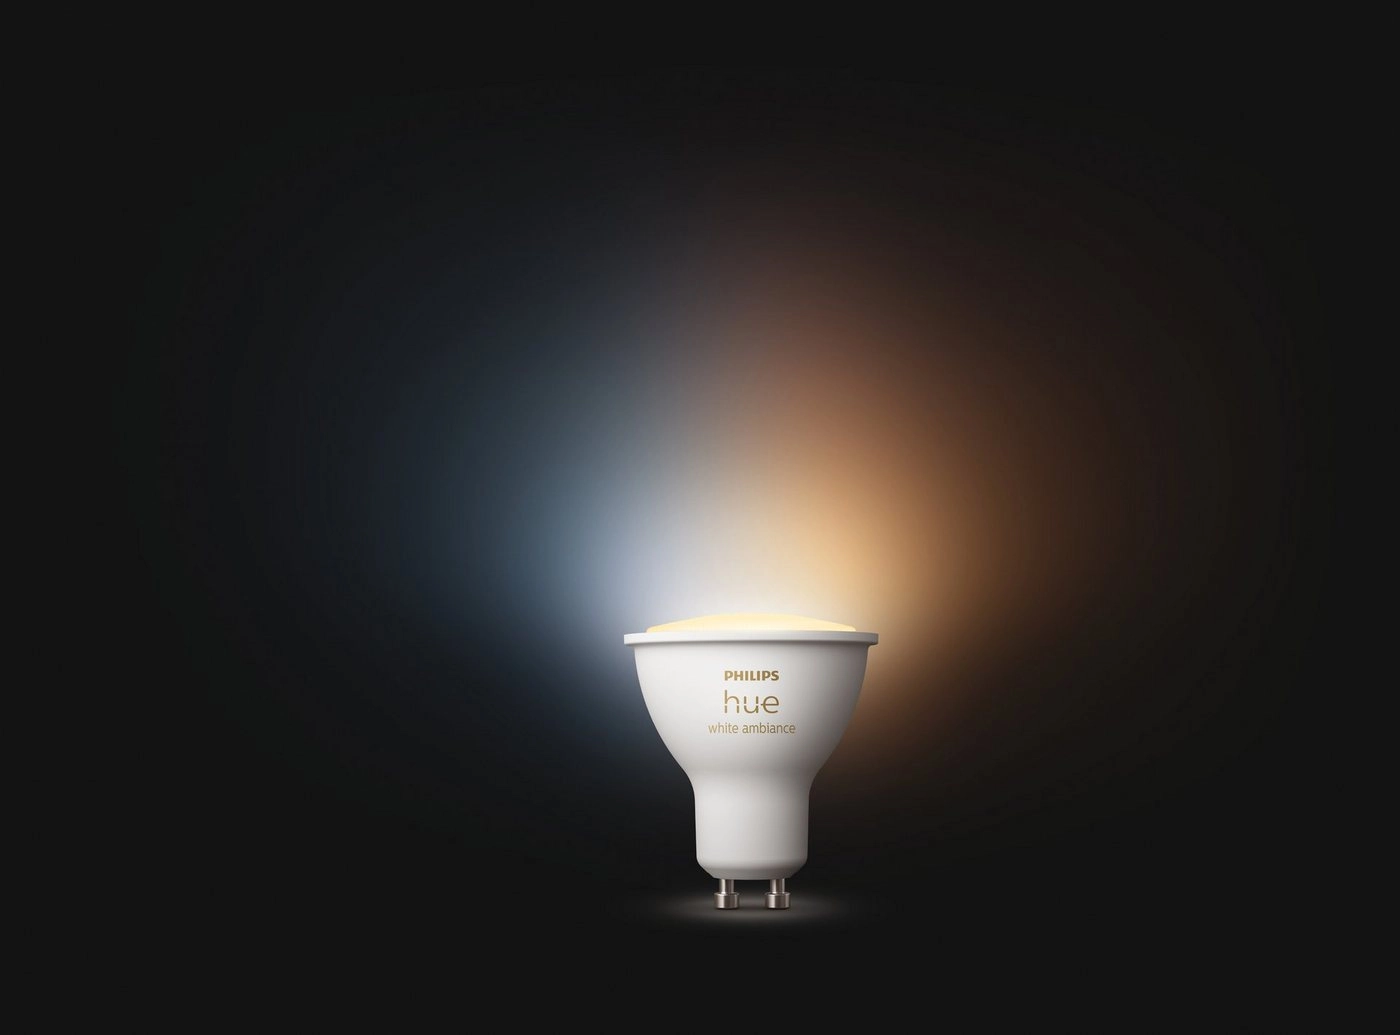 Philips Hue White ambience Einzelpack GU10|Intelligente Glühbirne|Weiß|Bluetooth/Zigbee|LED|GU10|Kühles Tageslicht